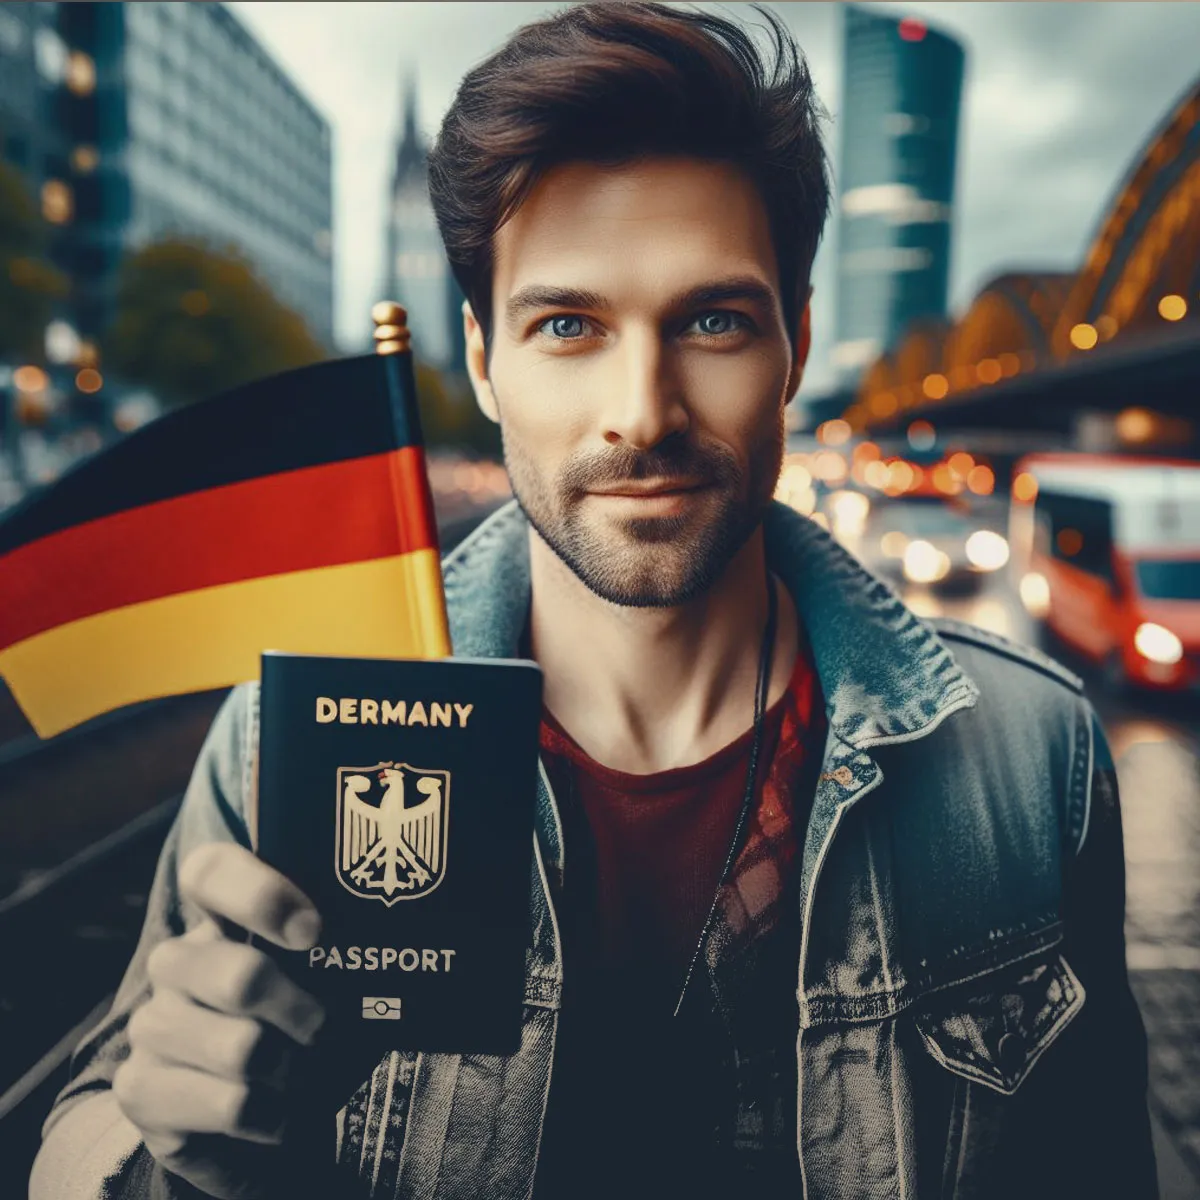  مزایای شهروند آلمانی شدن